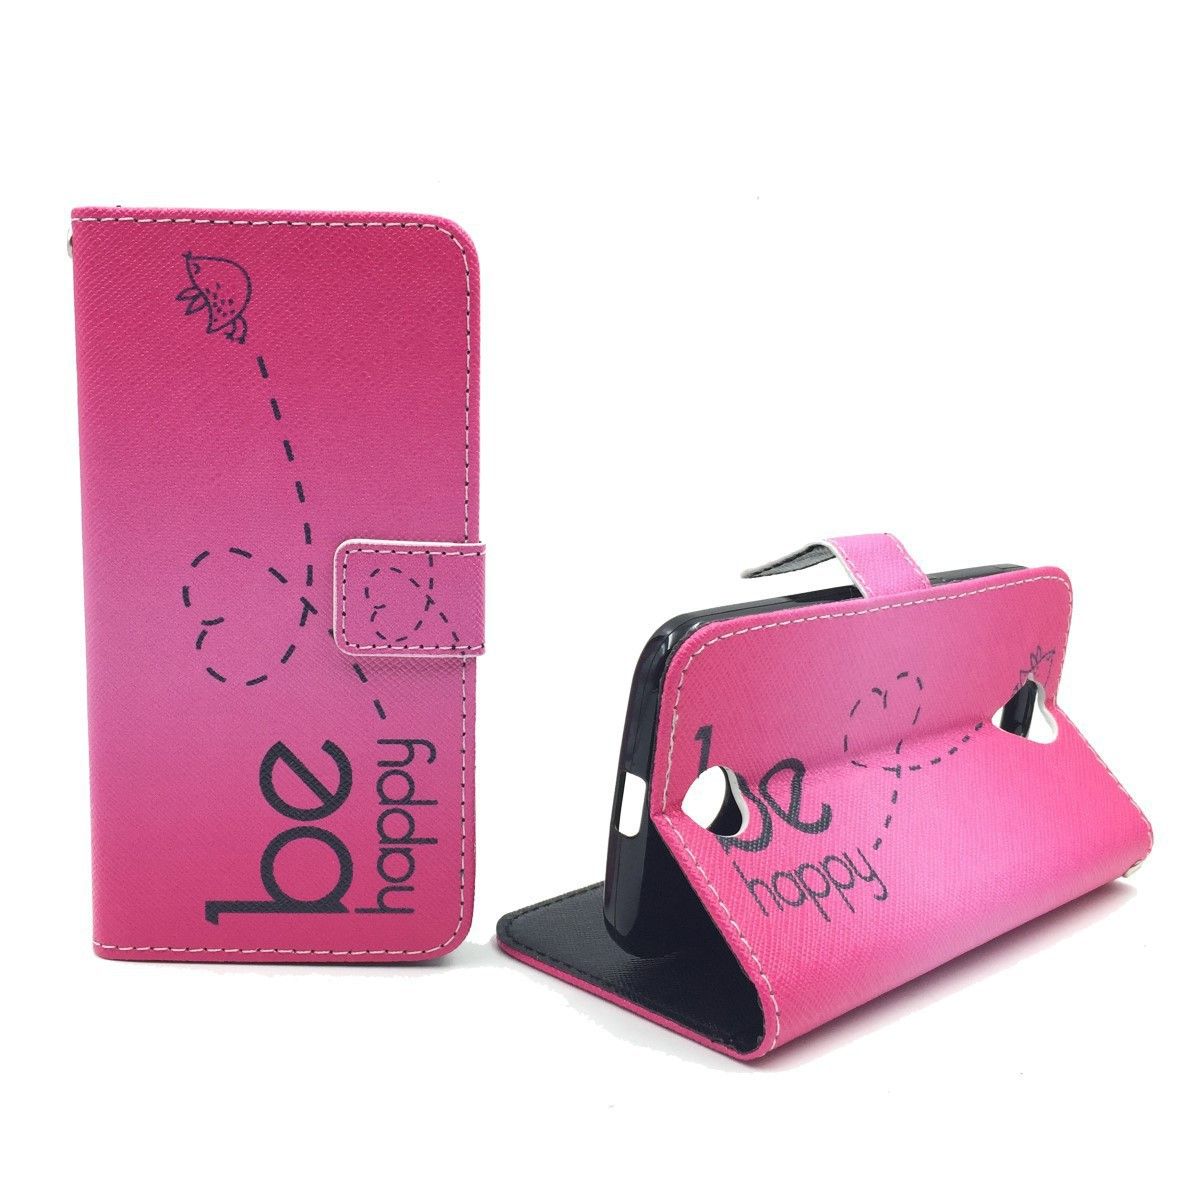 König Design Handyhülle kompatibel mit Samsung Galaxy J1 (2015) Schutztasche Wallet Cover 360 Case Pink